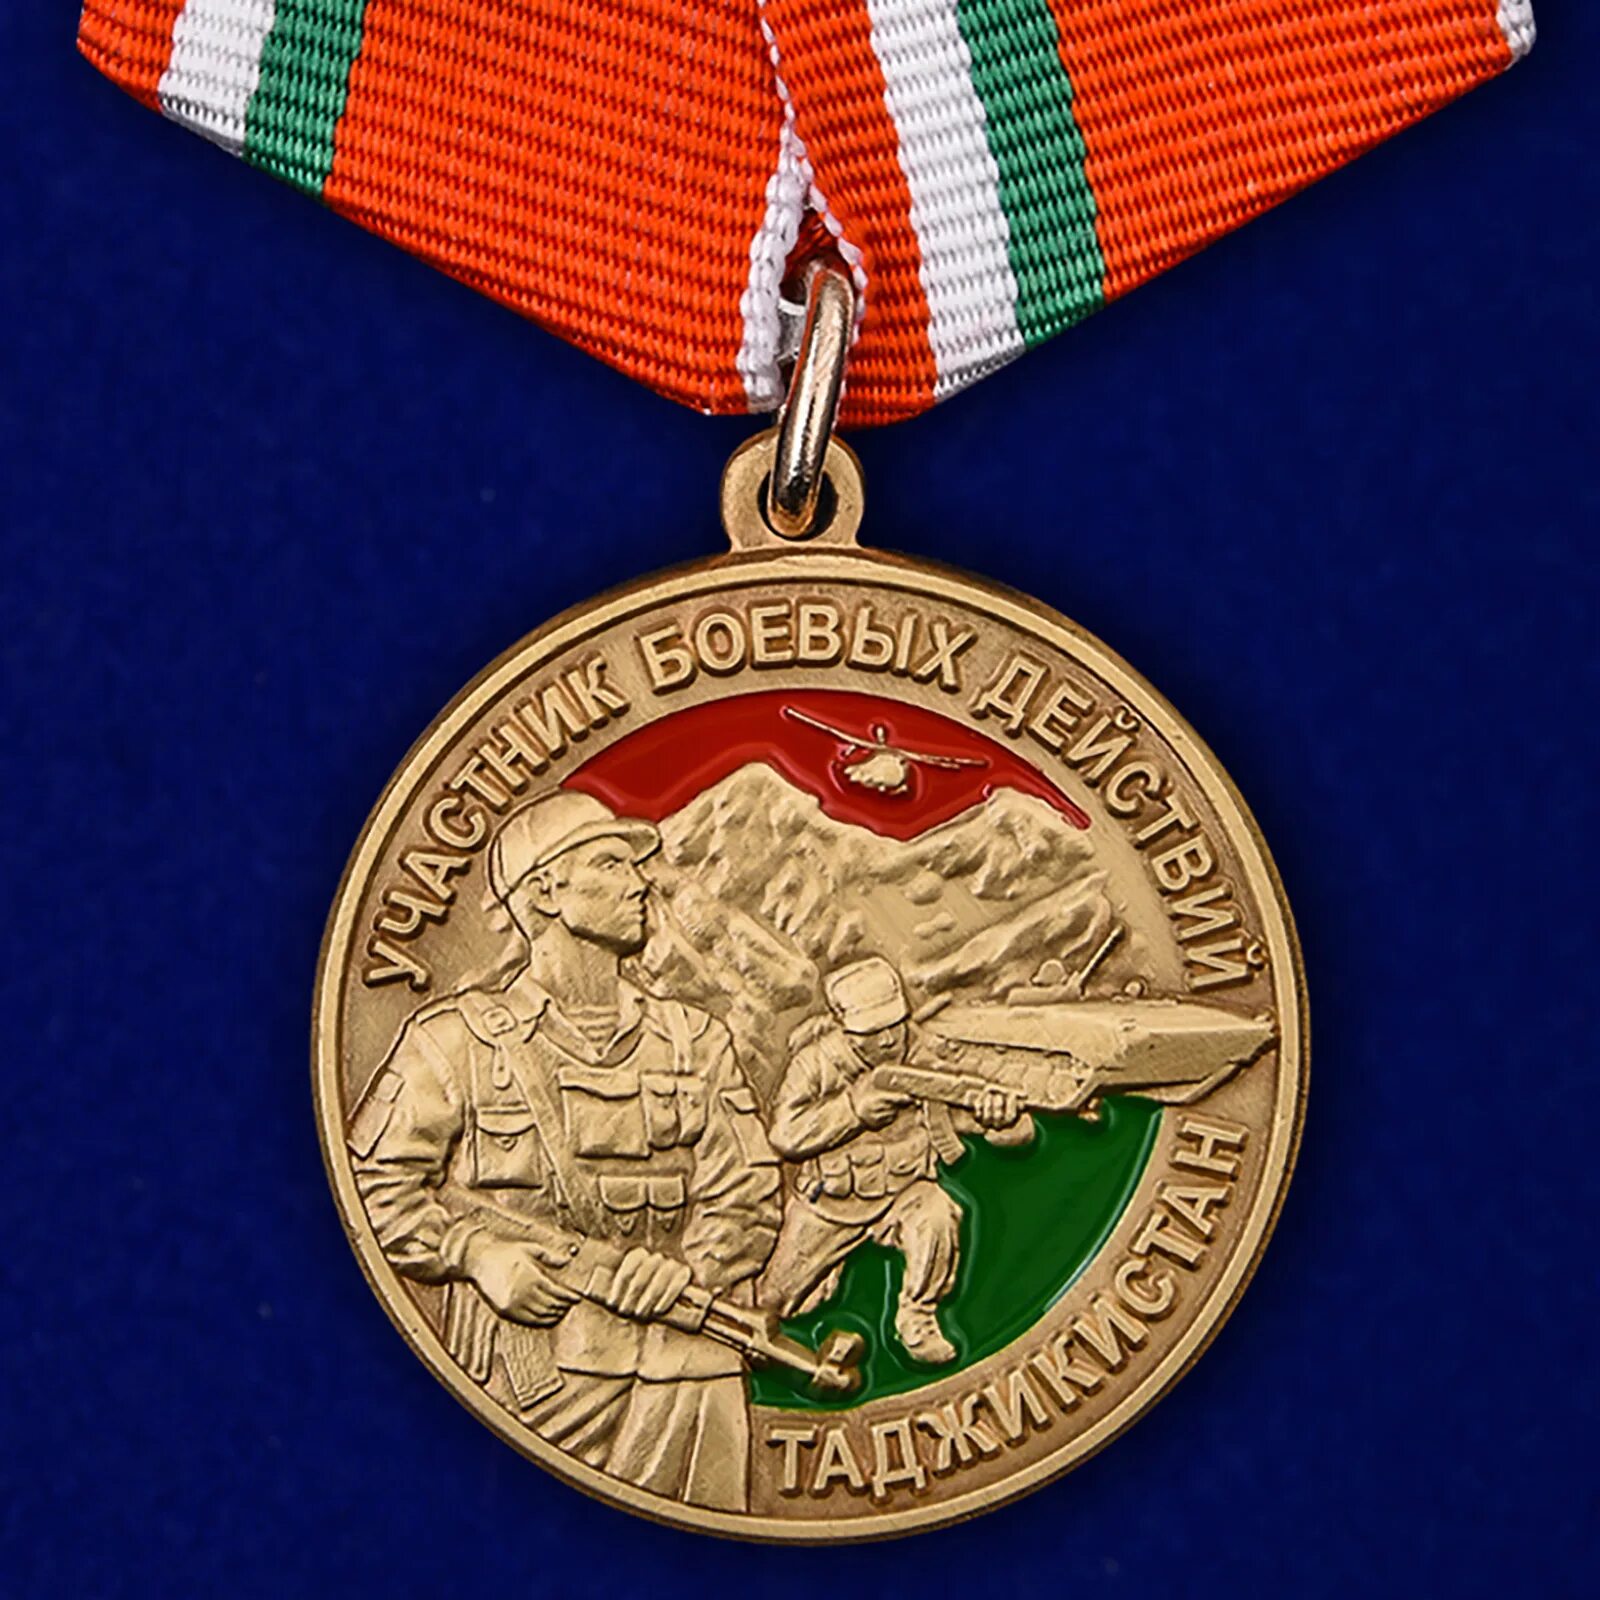 Орден ветерану боевых действий. Медаль воин интернационалист Таджикистан. Медаль участник боевых действий в Таджикистане. Медаль воин интернационалист ДНР. Медаль за Таджикистан 1992-1997.